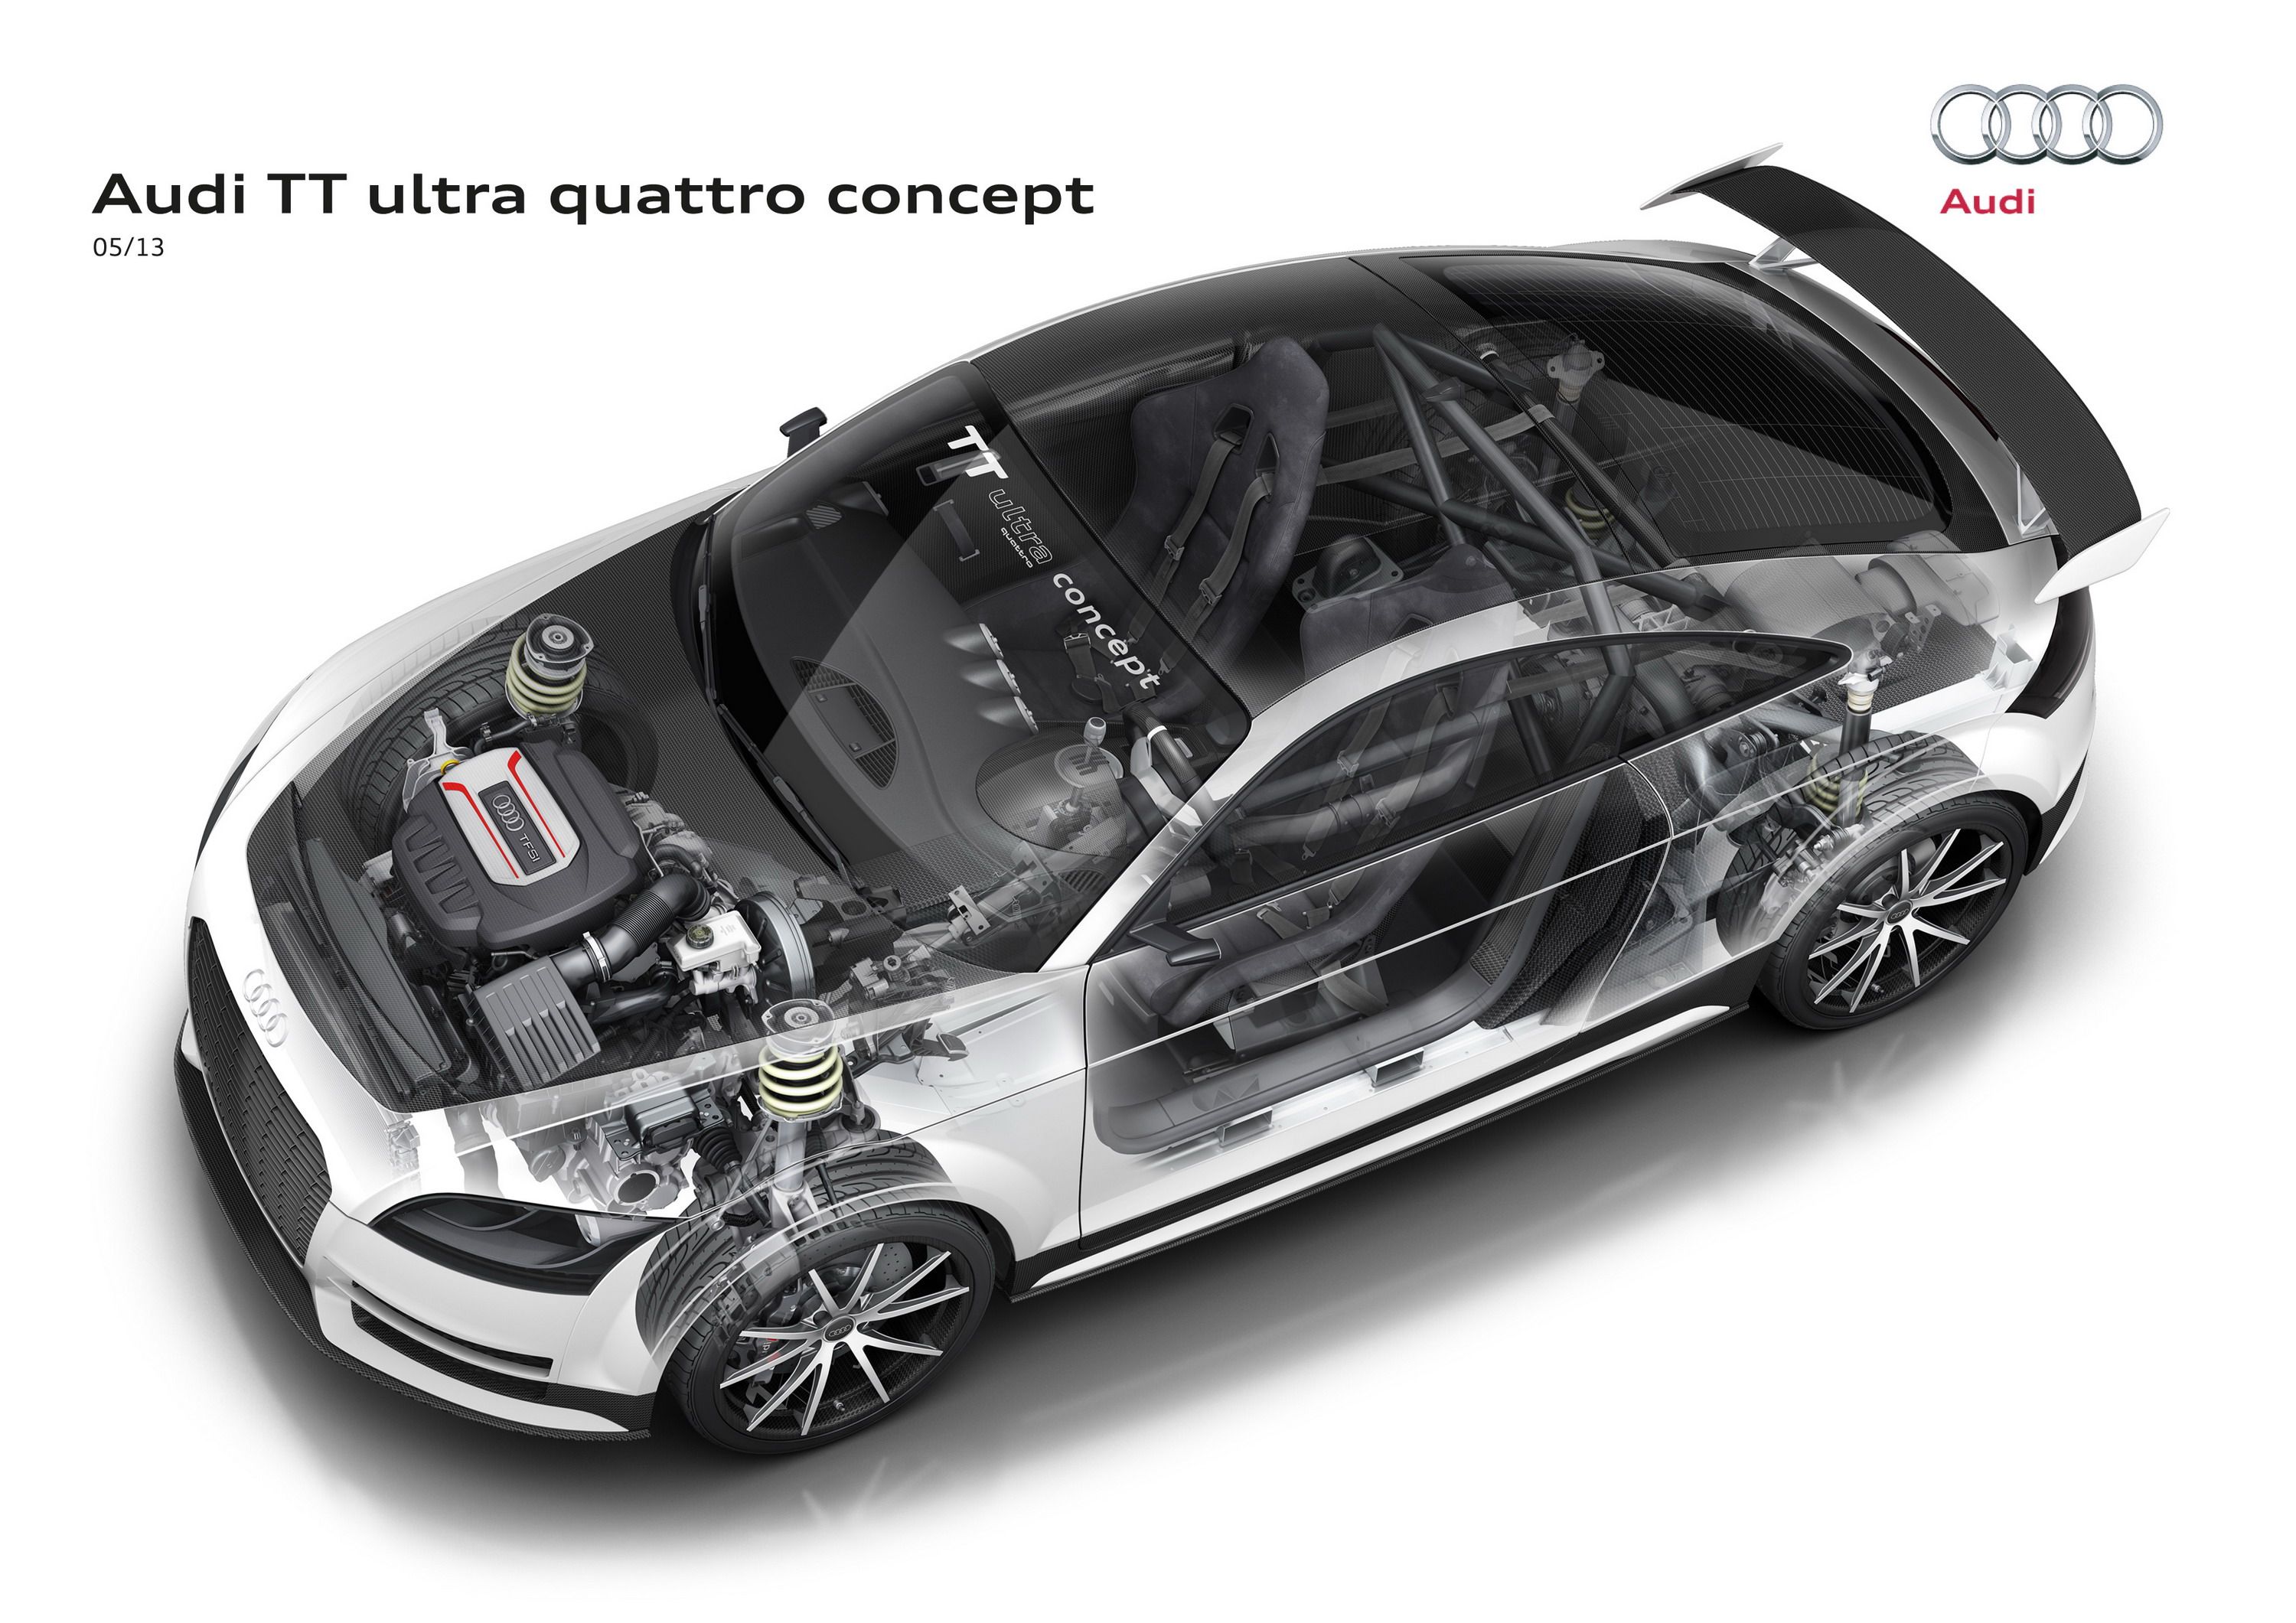 2013 Audi TT Ultra Quattro Concept